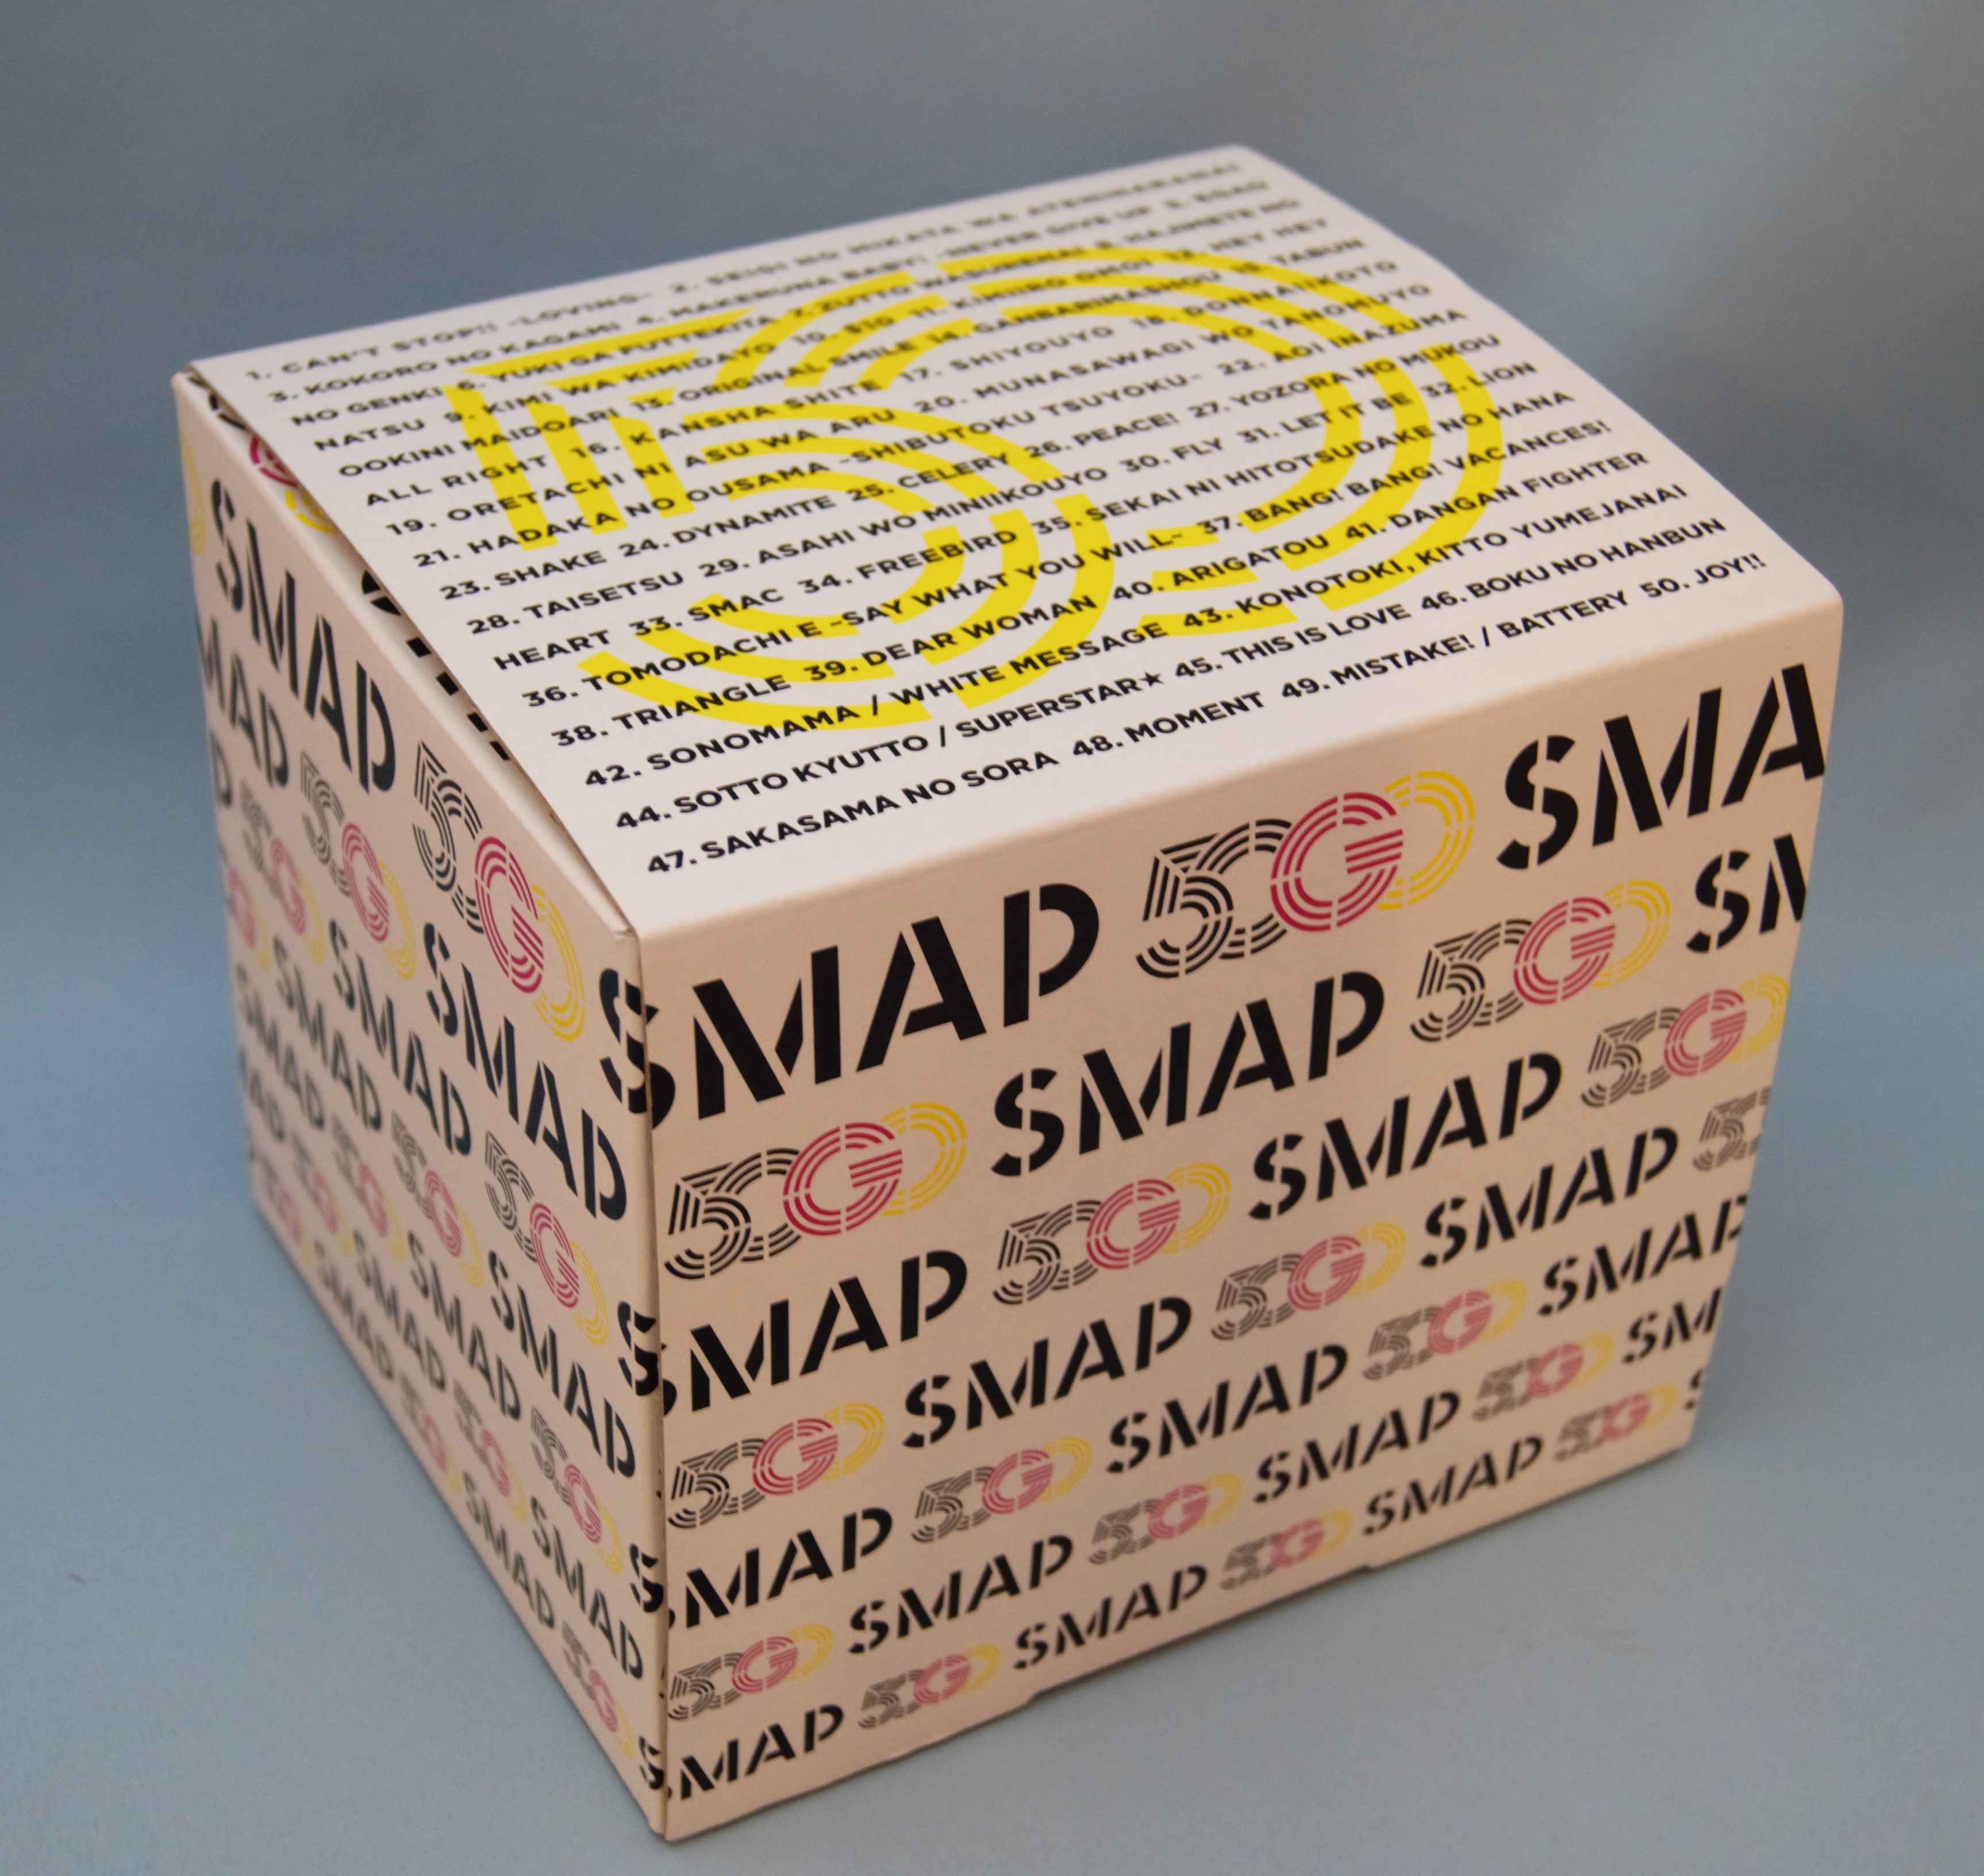 劇場限定グッズ 50 GO SMAP 50 SINGLES スマップショップ限定 ネコポス発送|邦楽 - rustavi.gov.ge